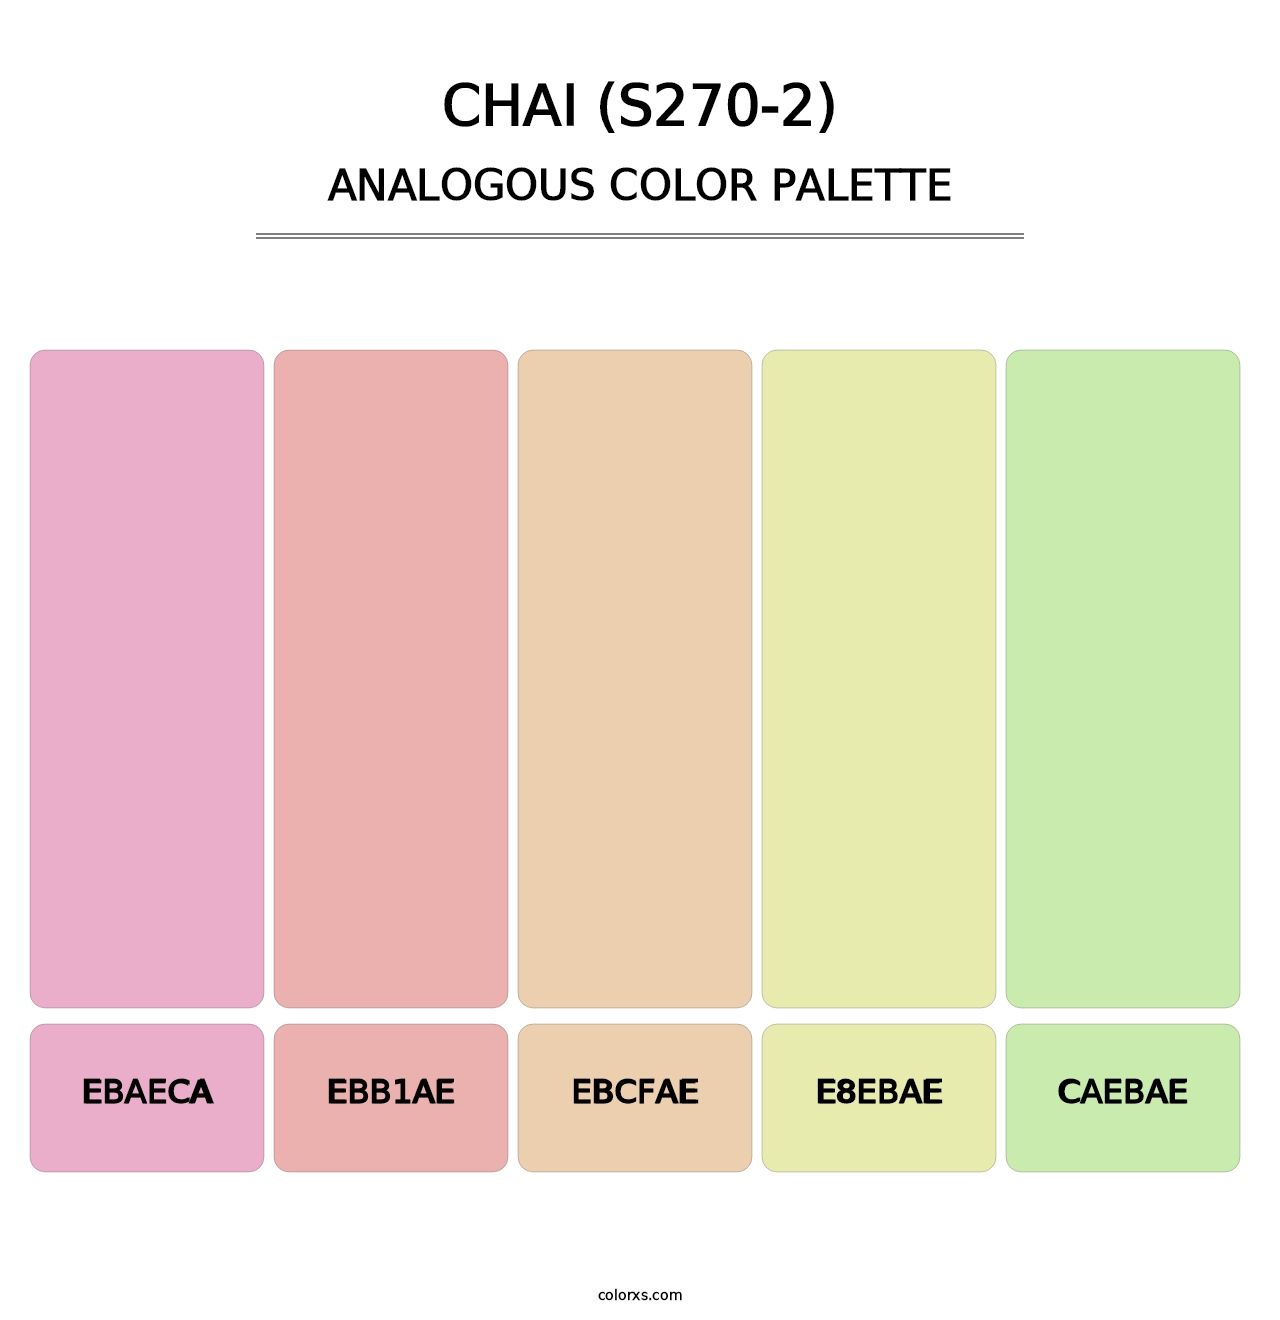 Chai (S270-2) - Analogous Color Palette